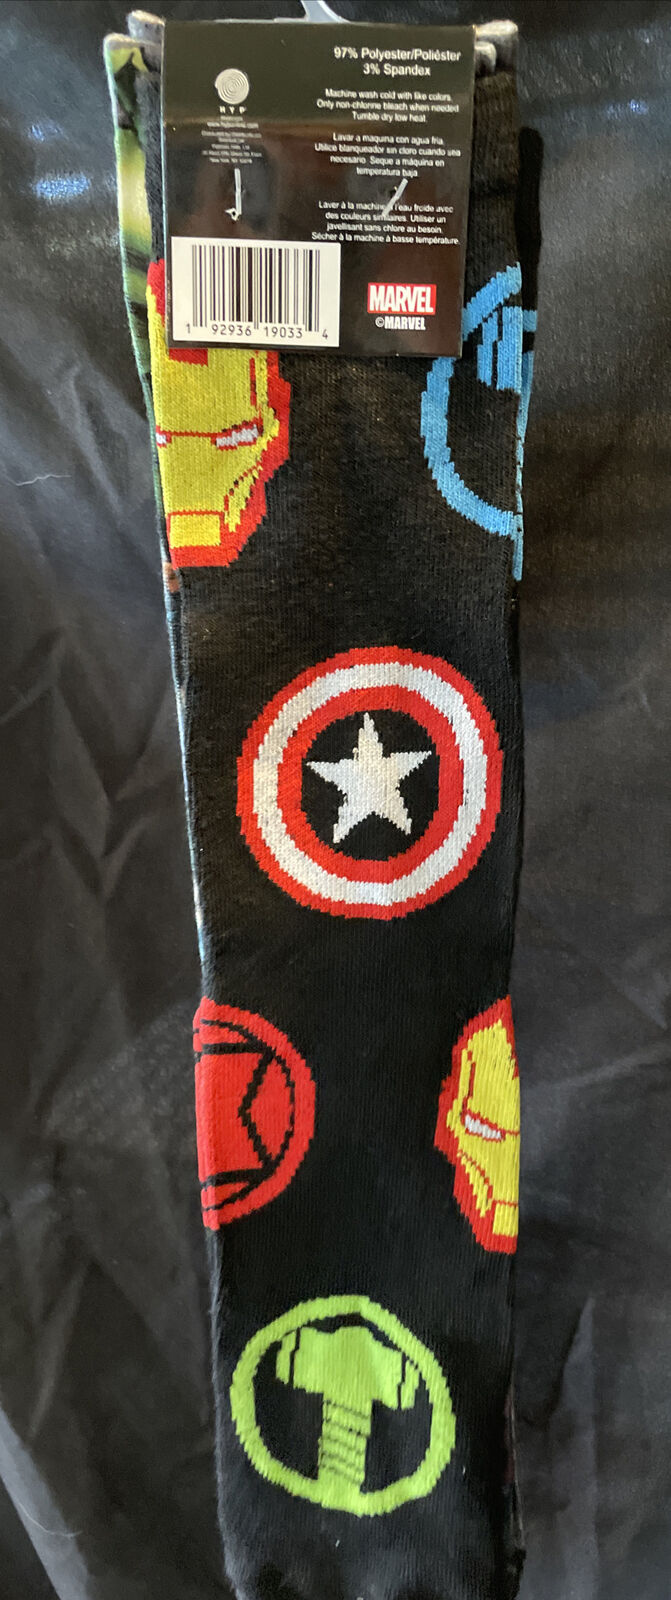 Marvel Avengers Dye And Knit 2 Pack Mens Crew Socks Size 6-12